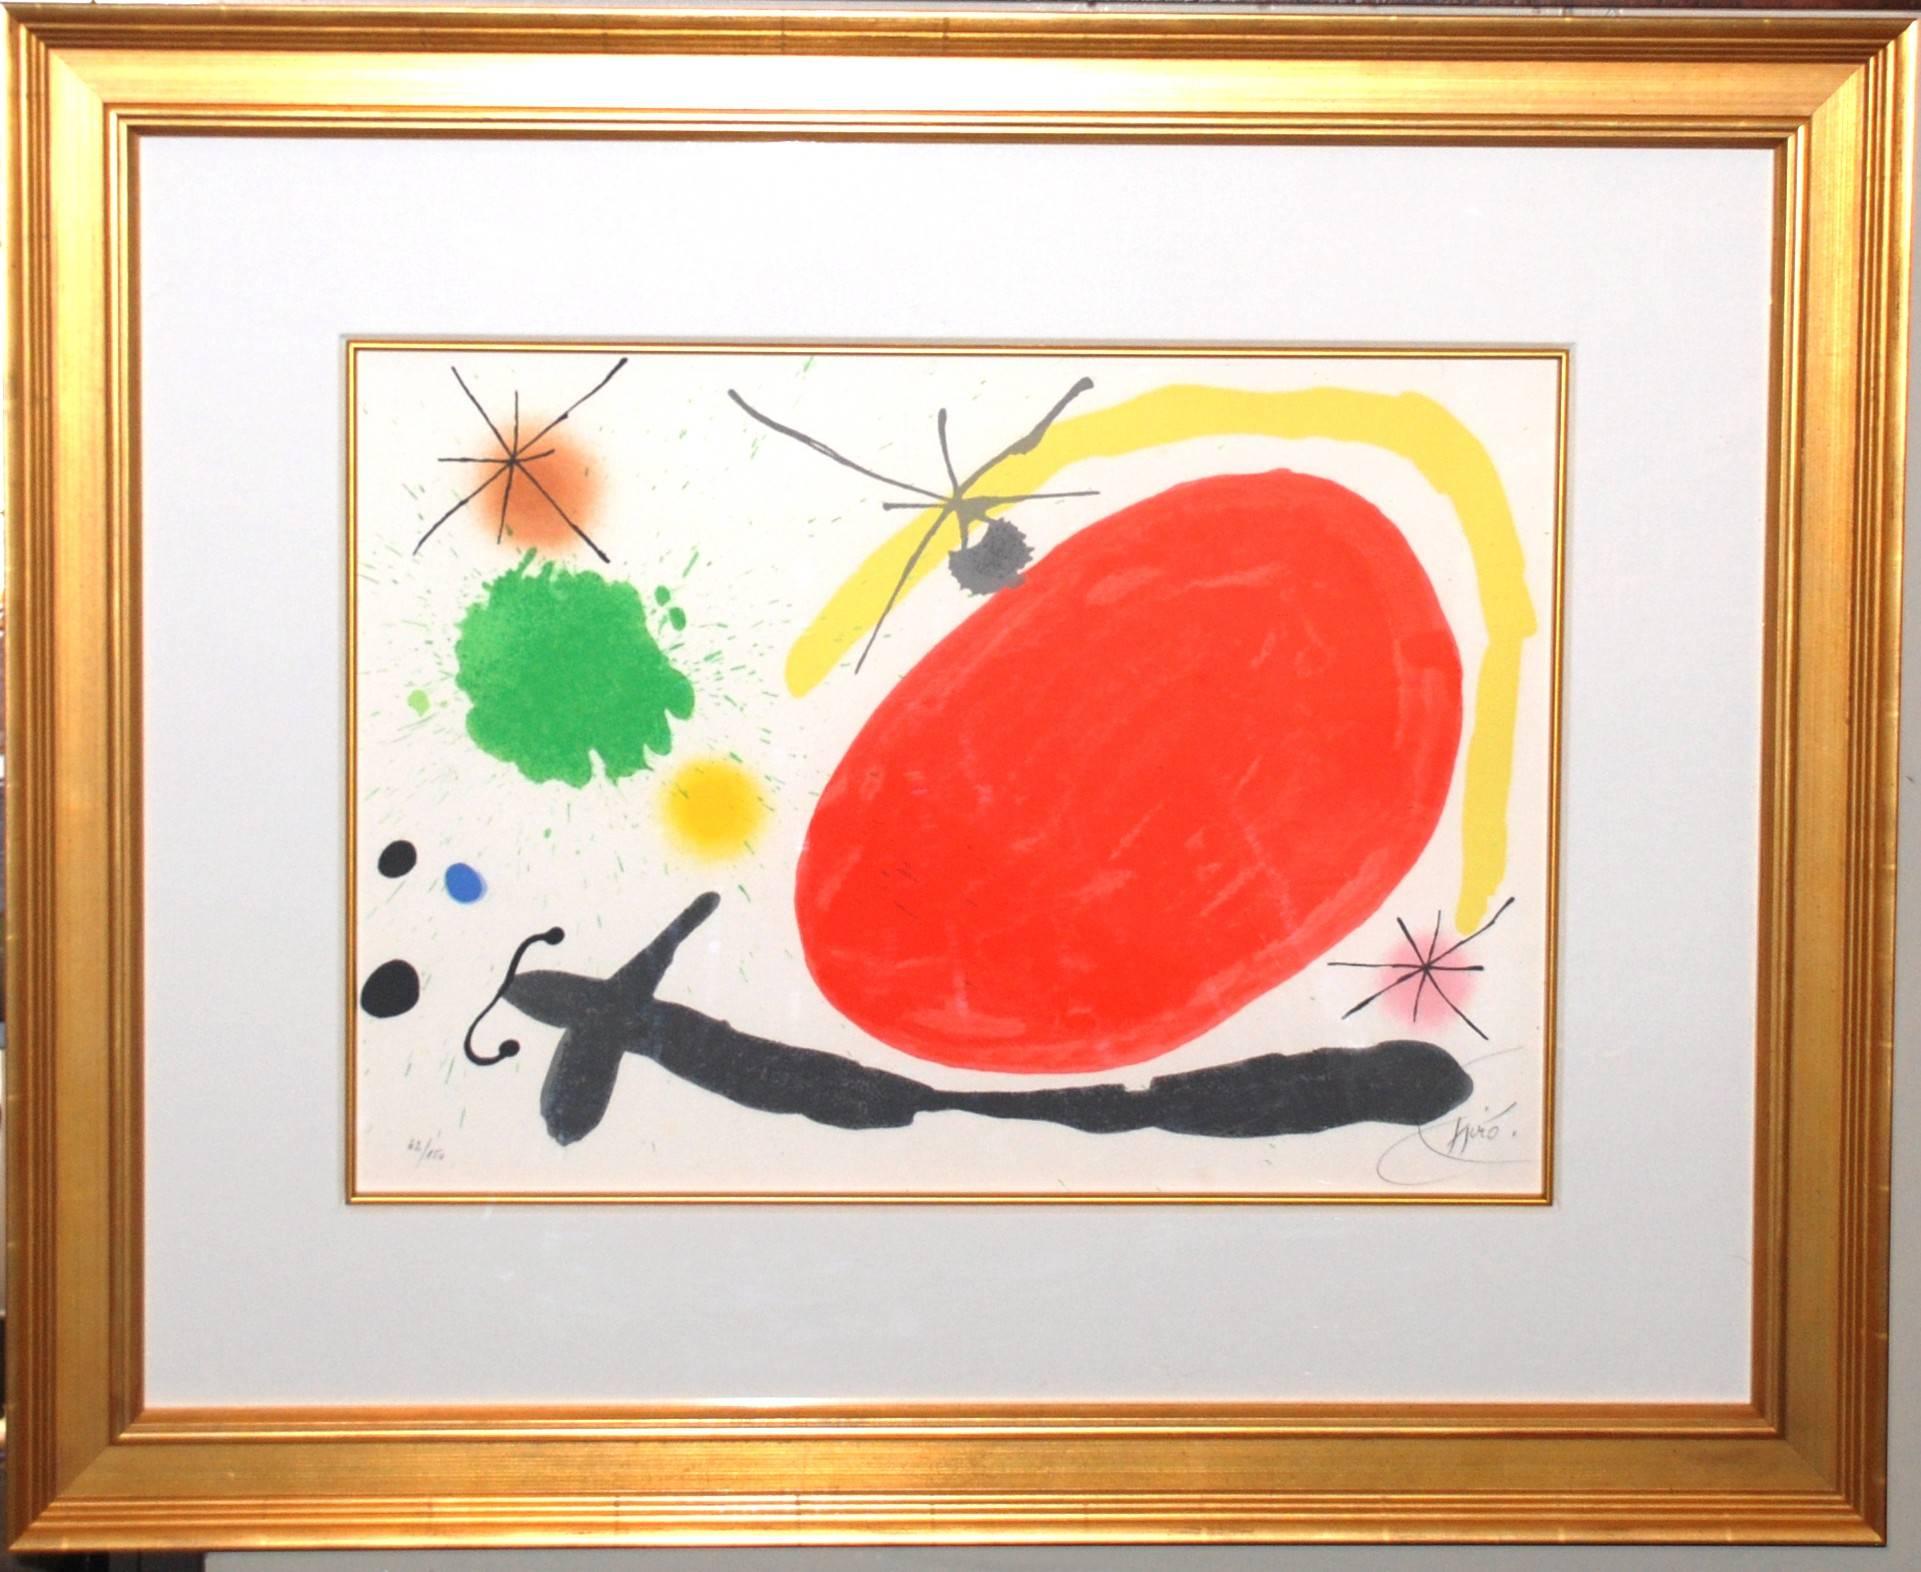 La Japonaise - Print by Joan Miró